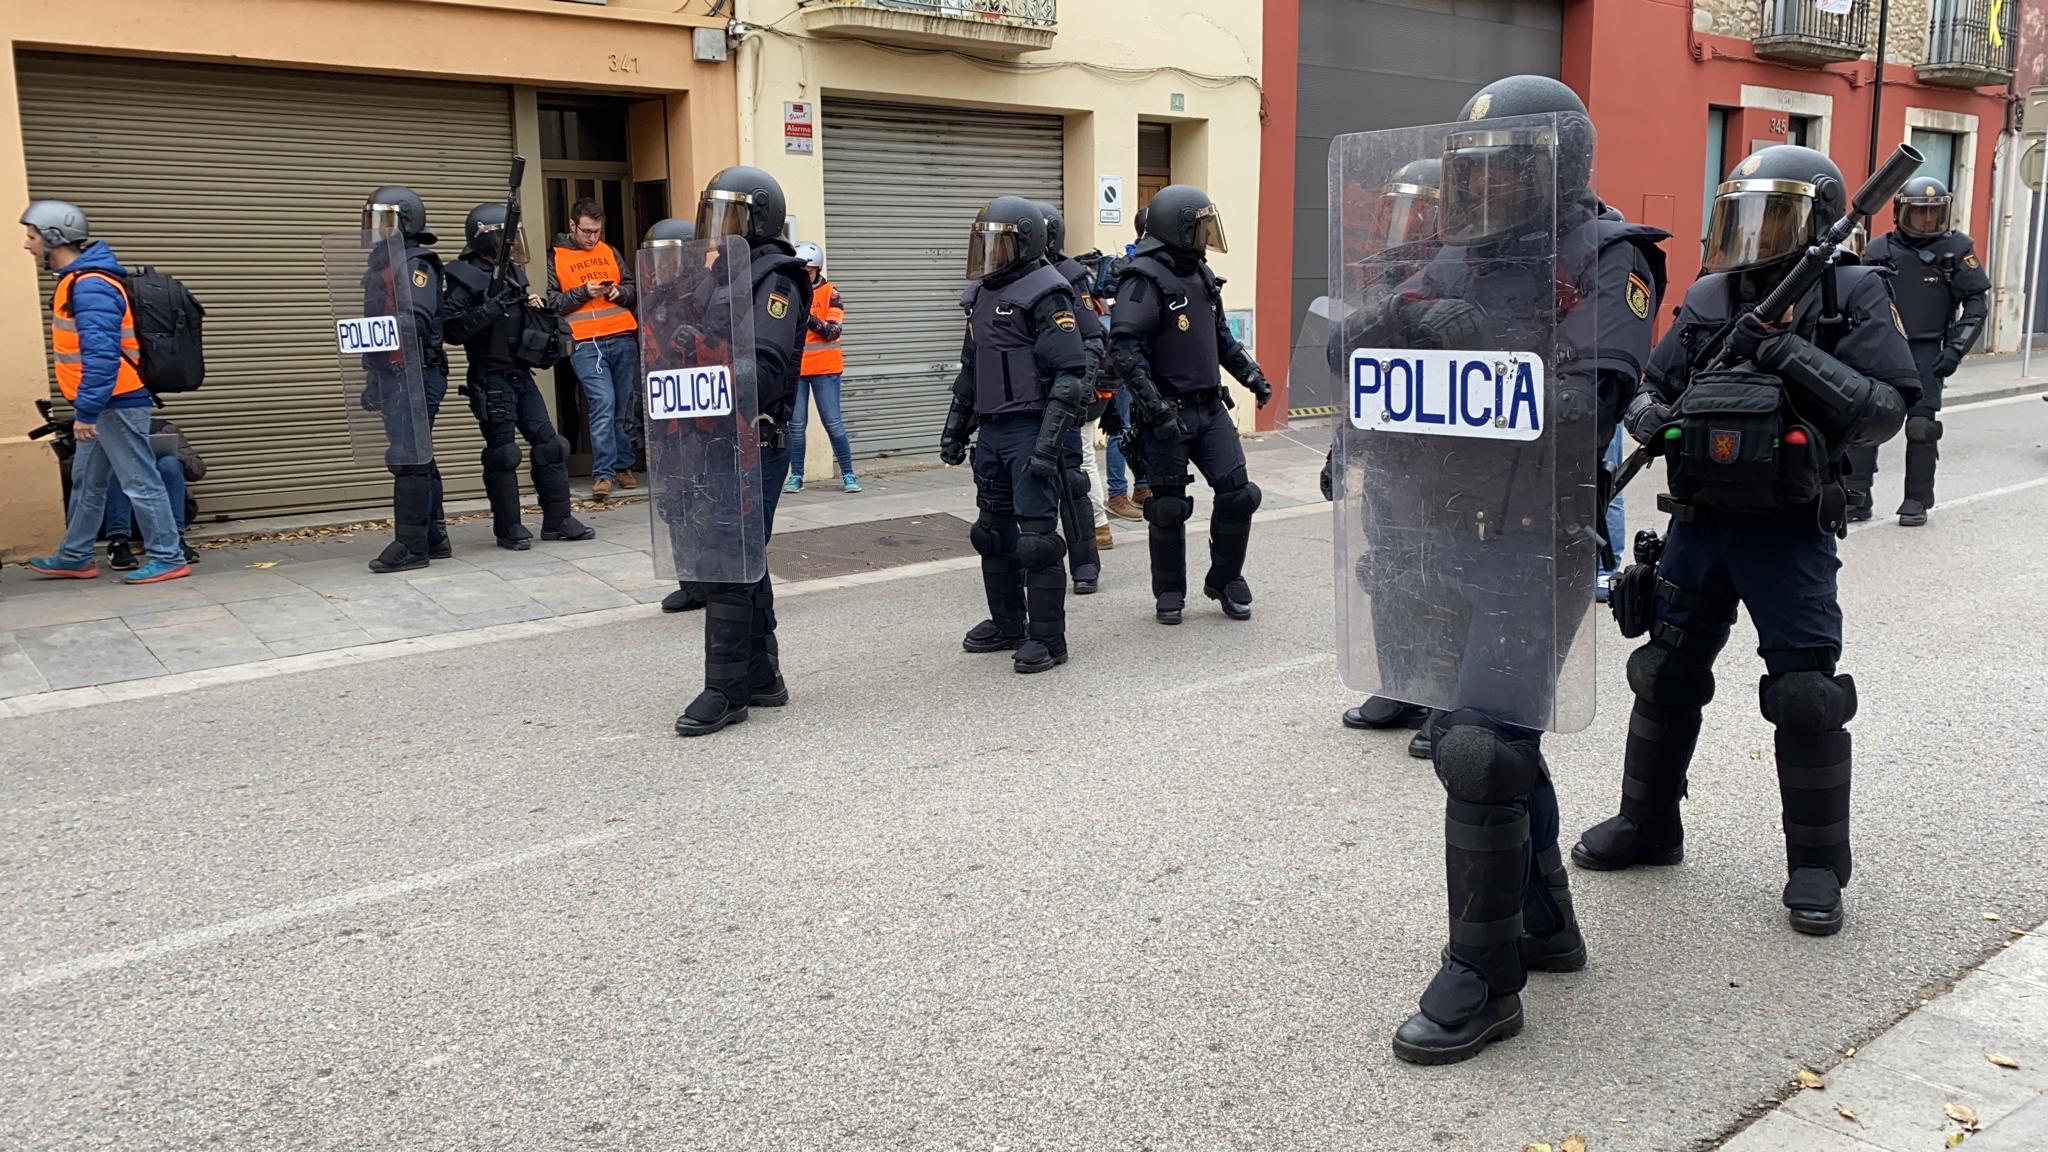 La policia desallotja l'AP-7 i trasllada la tensió a Girona